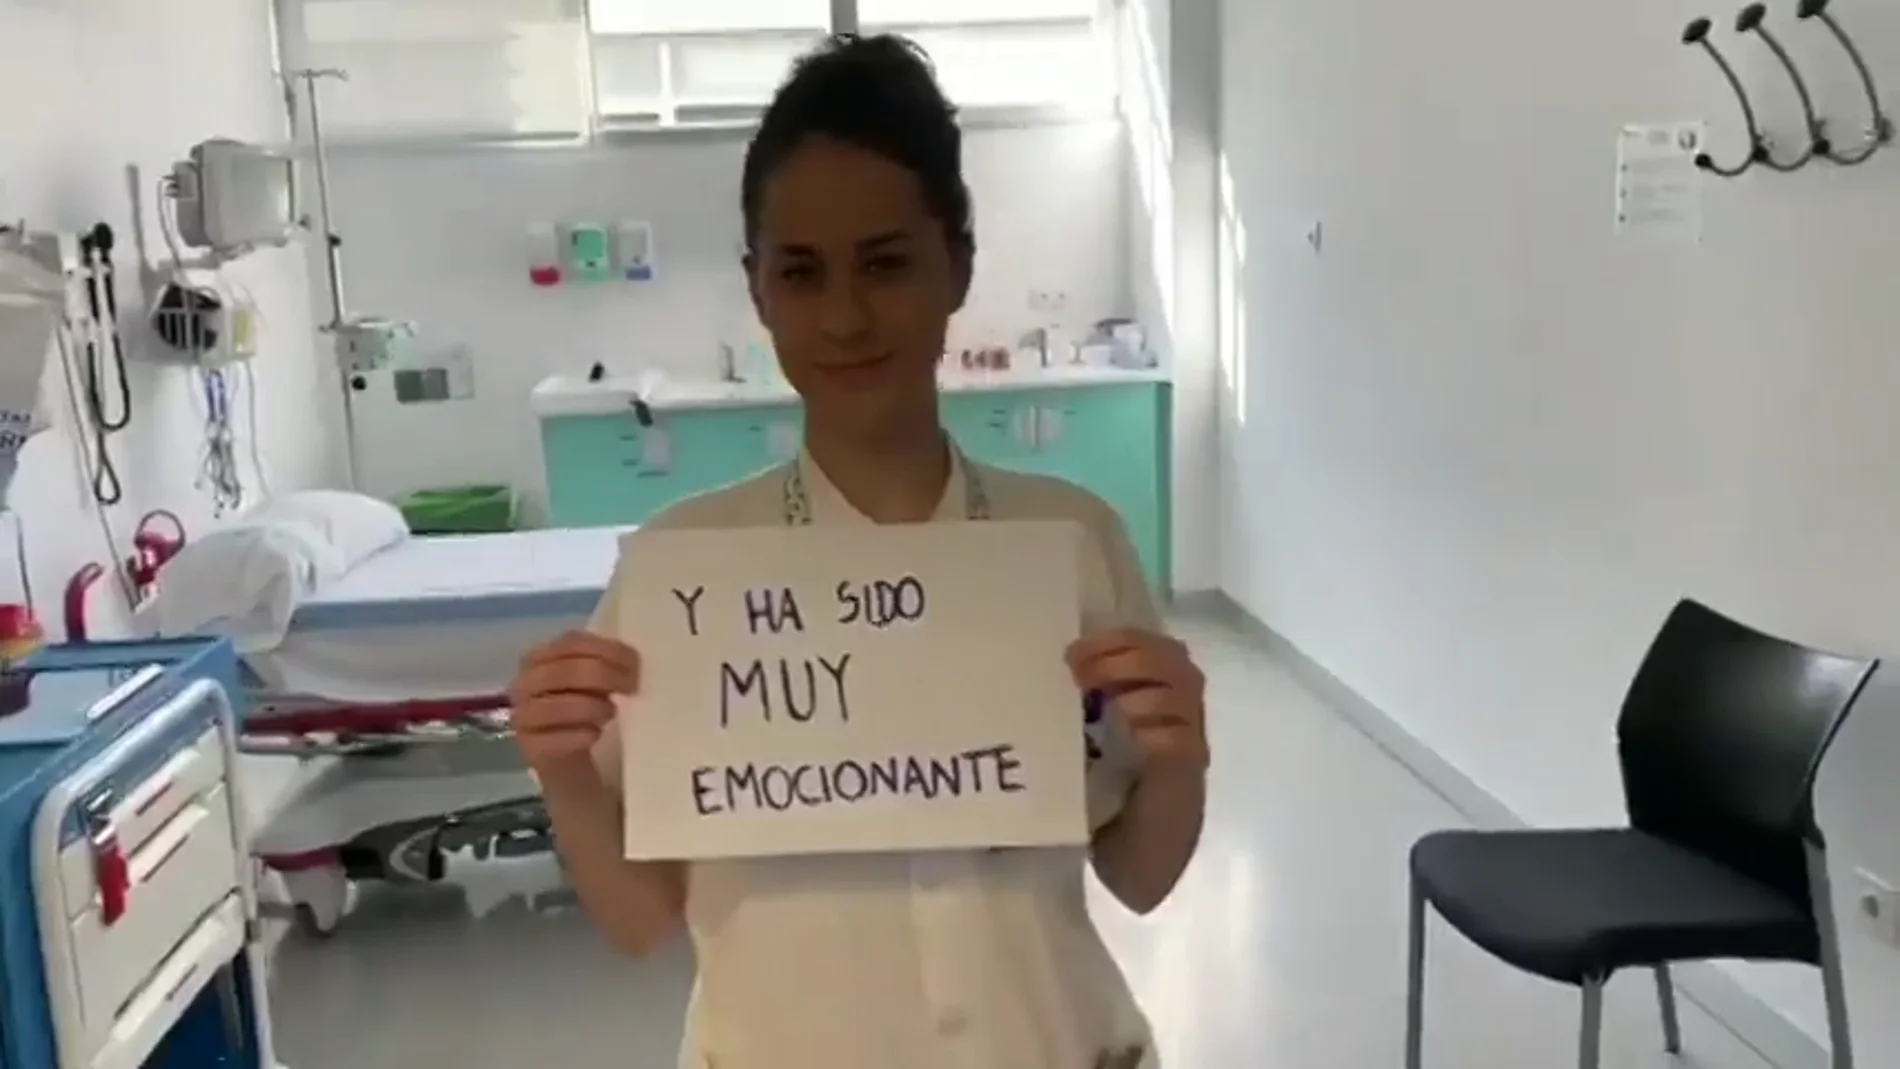 "Estamos juntos en esto y estamos dispuesto a darlo todo": la reacción de los sanitarios al aplauso de los españoles 